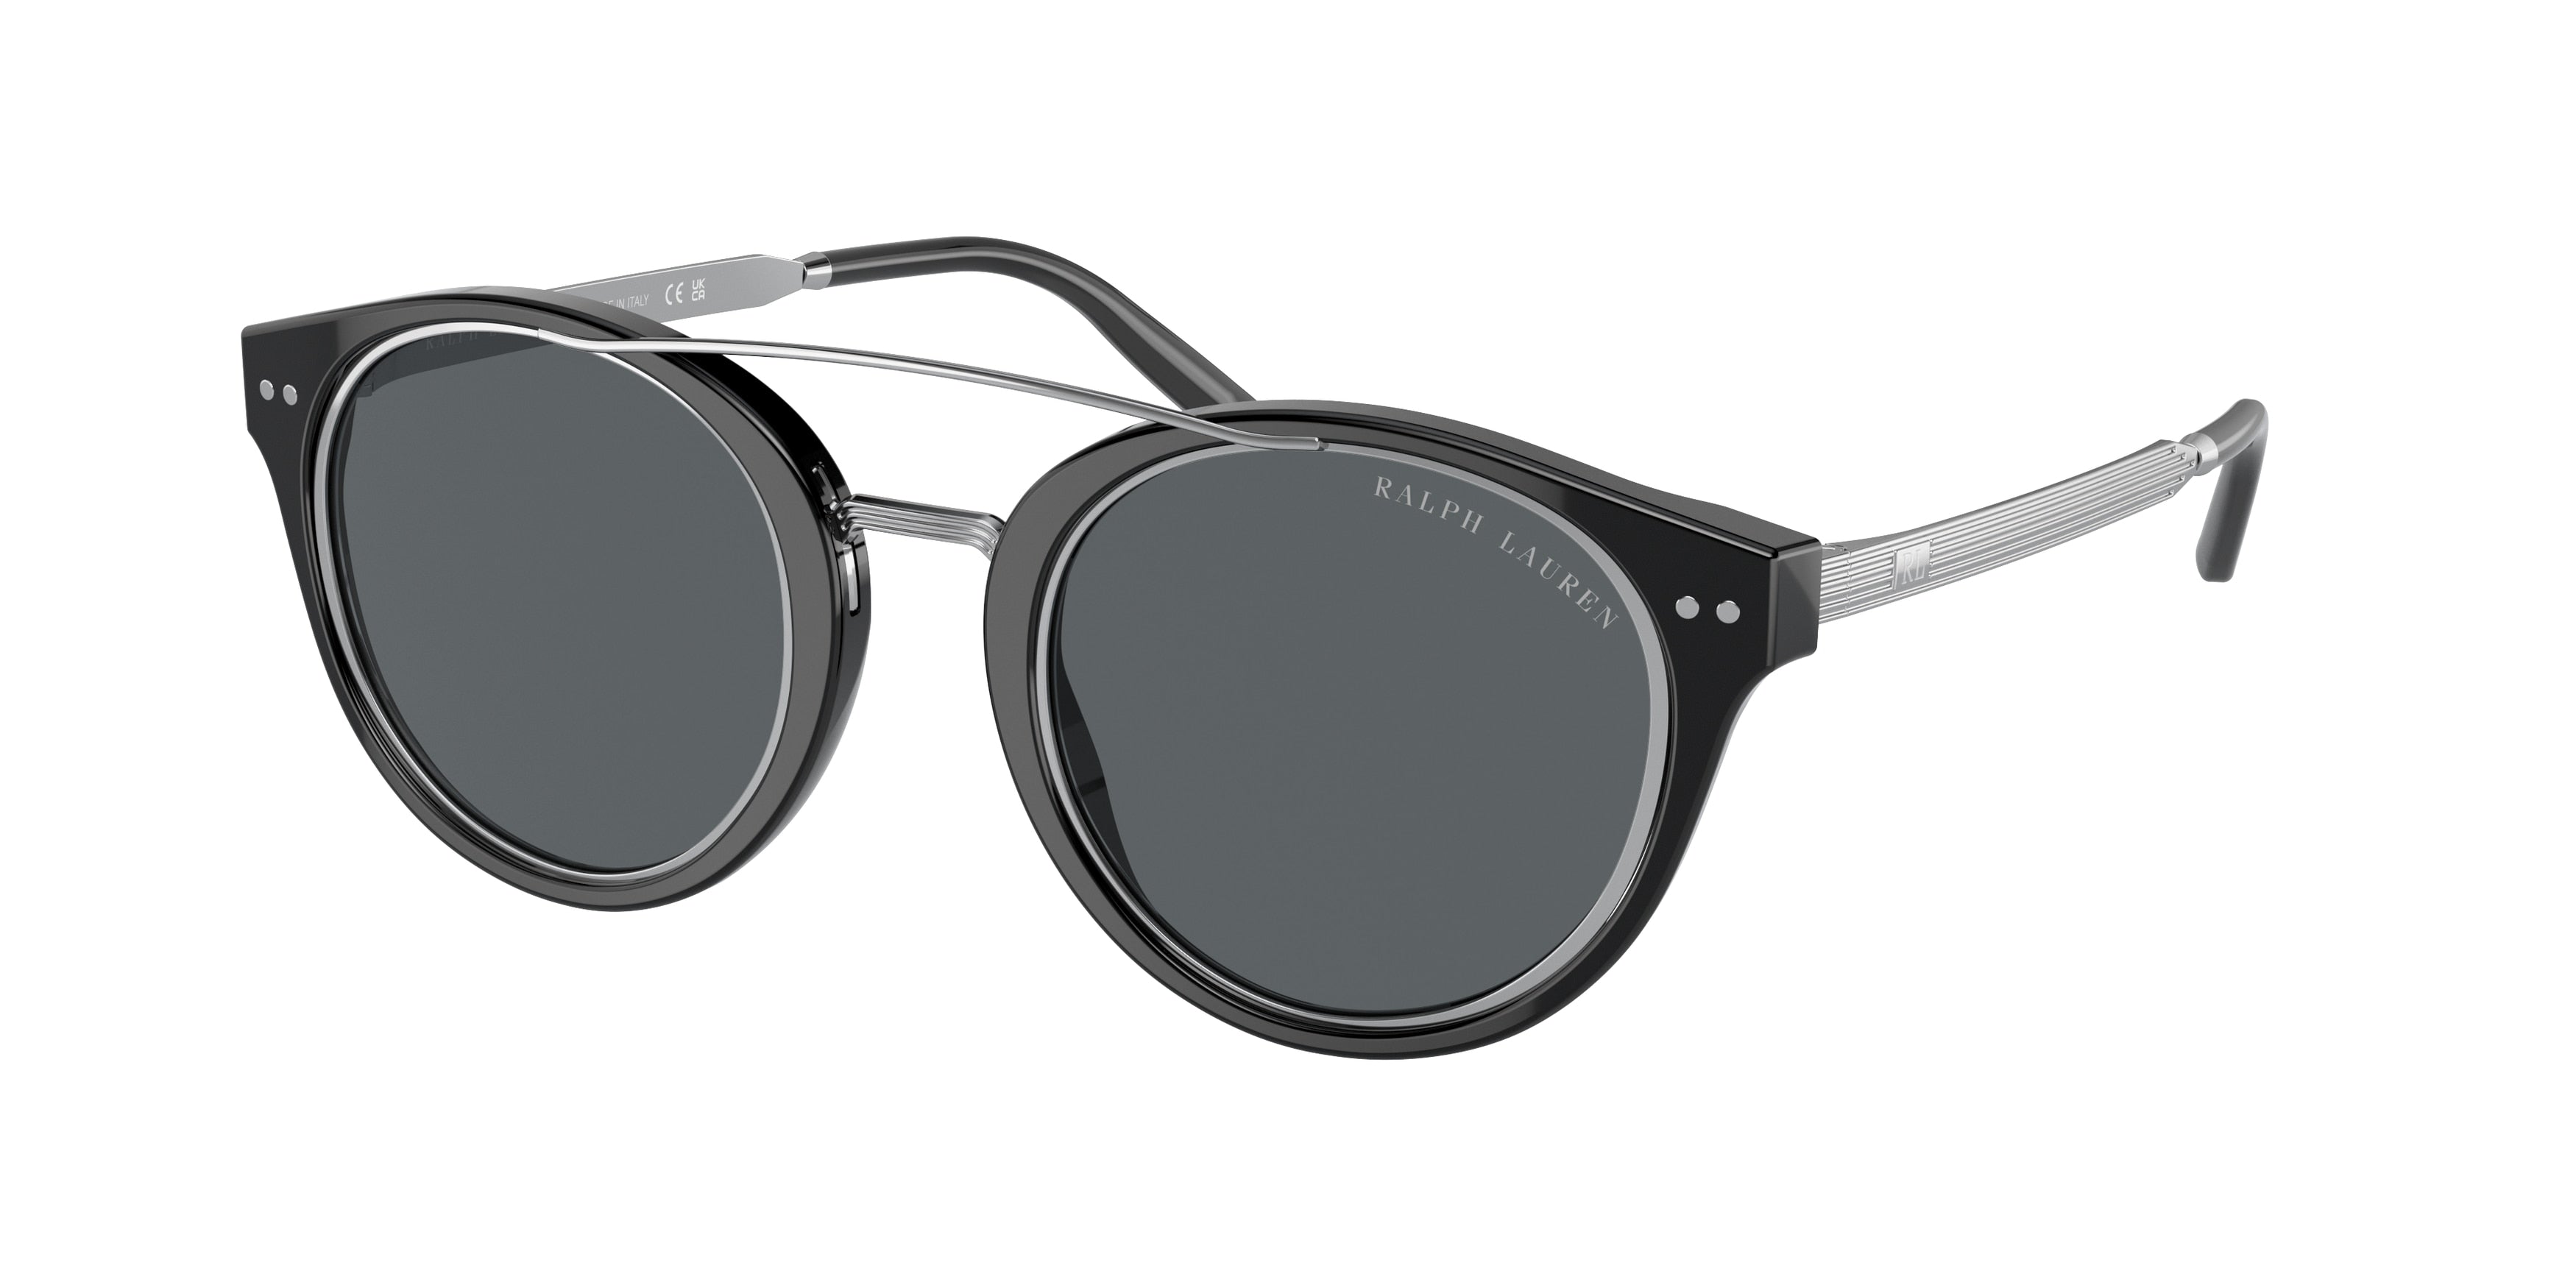 Ralph Lauren RL8210 Phantos Sunglasses